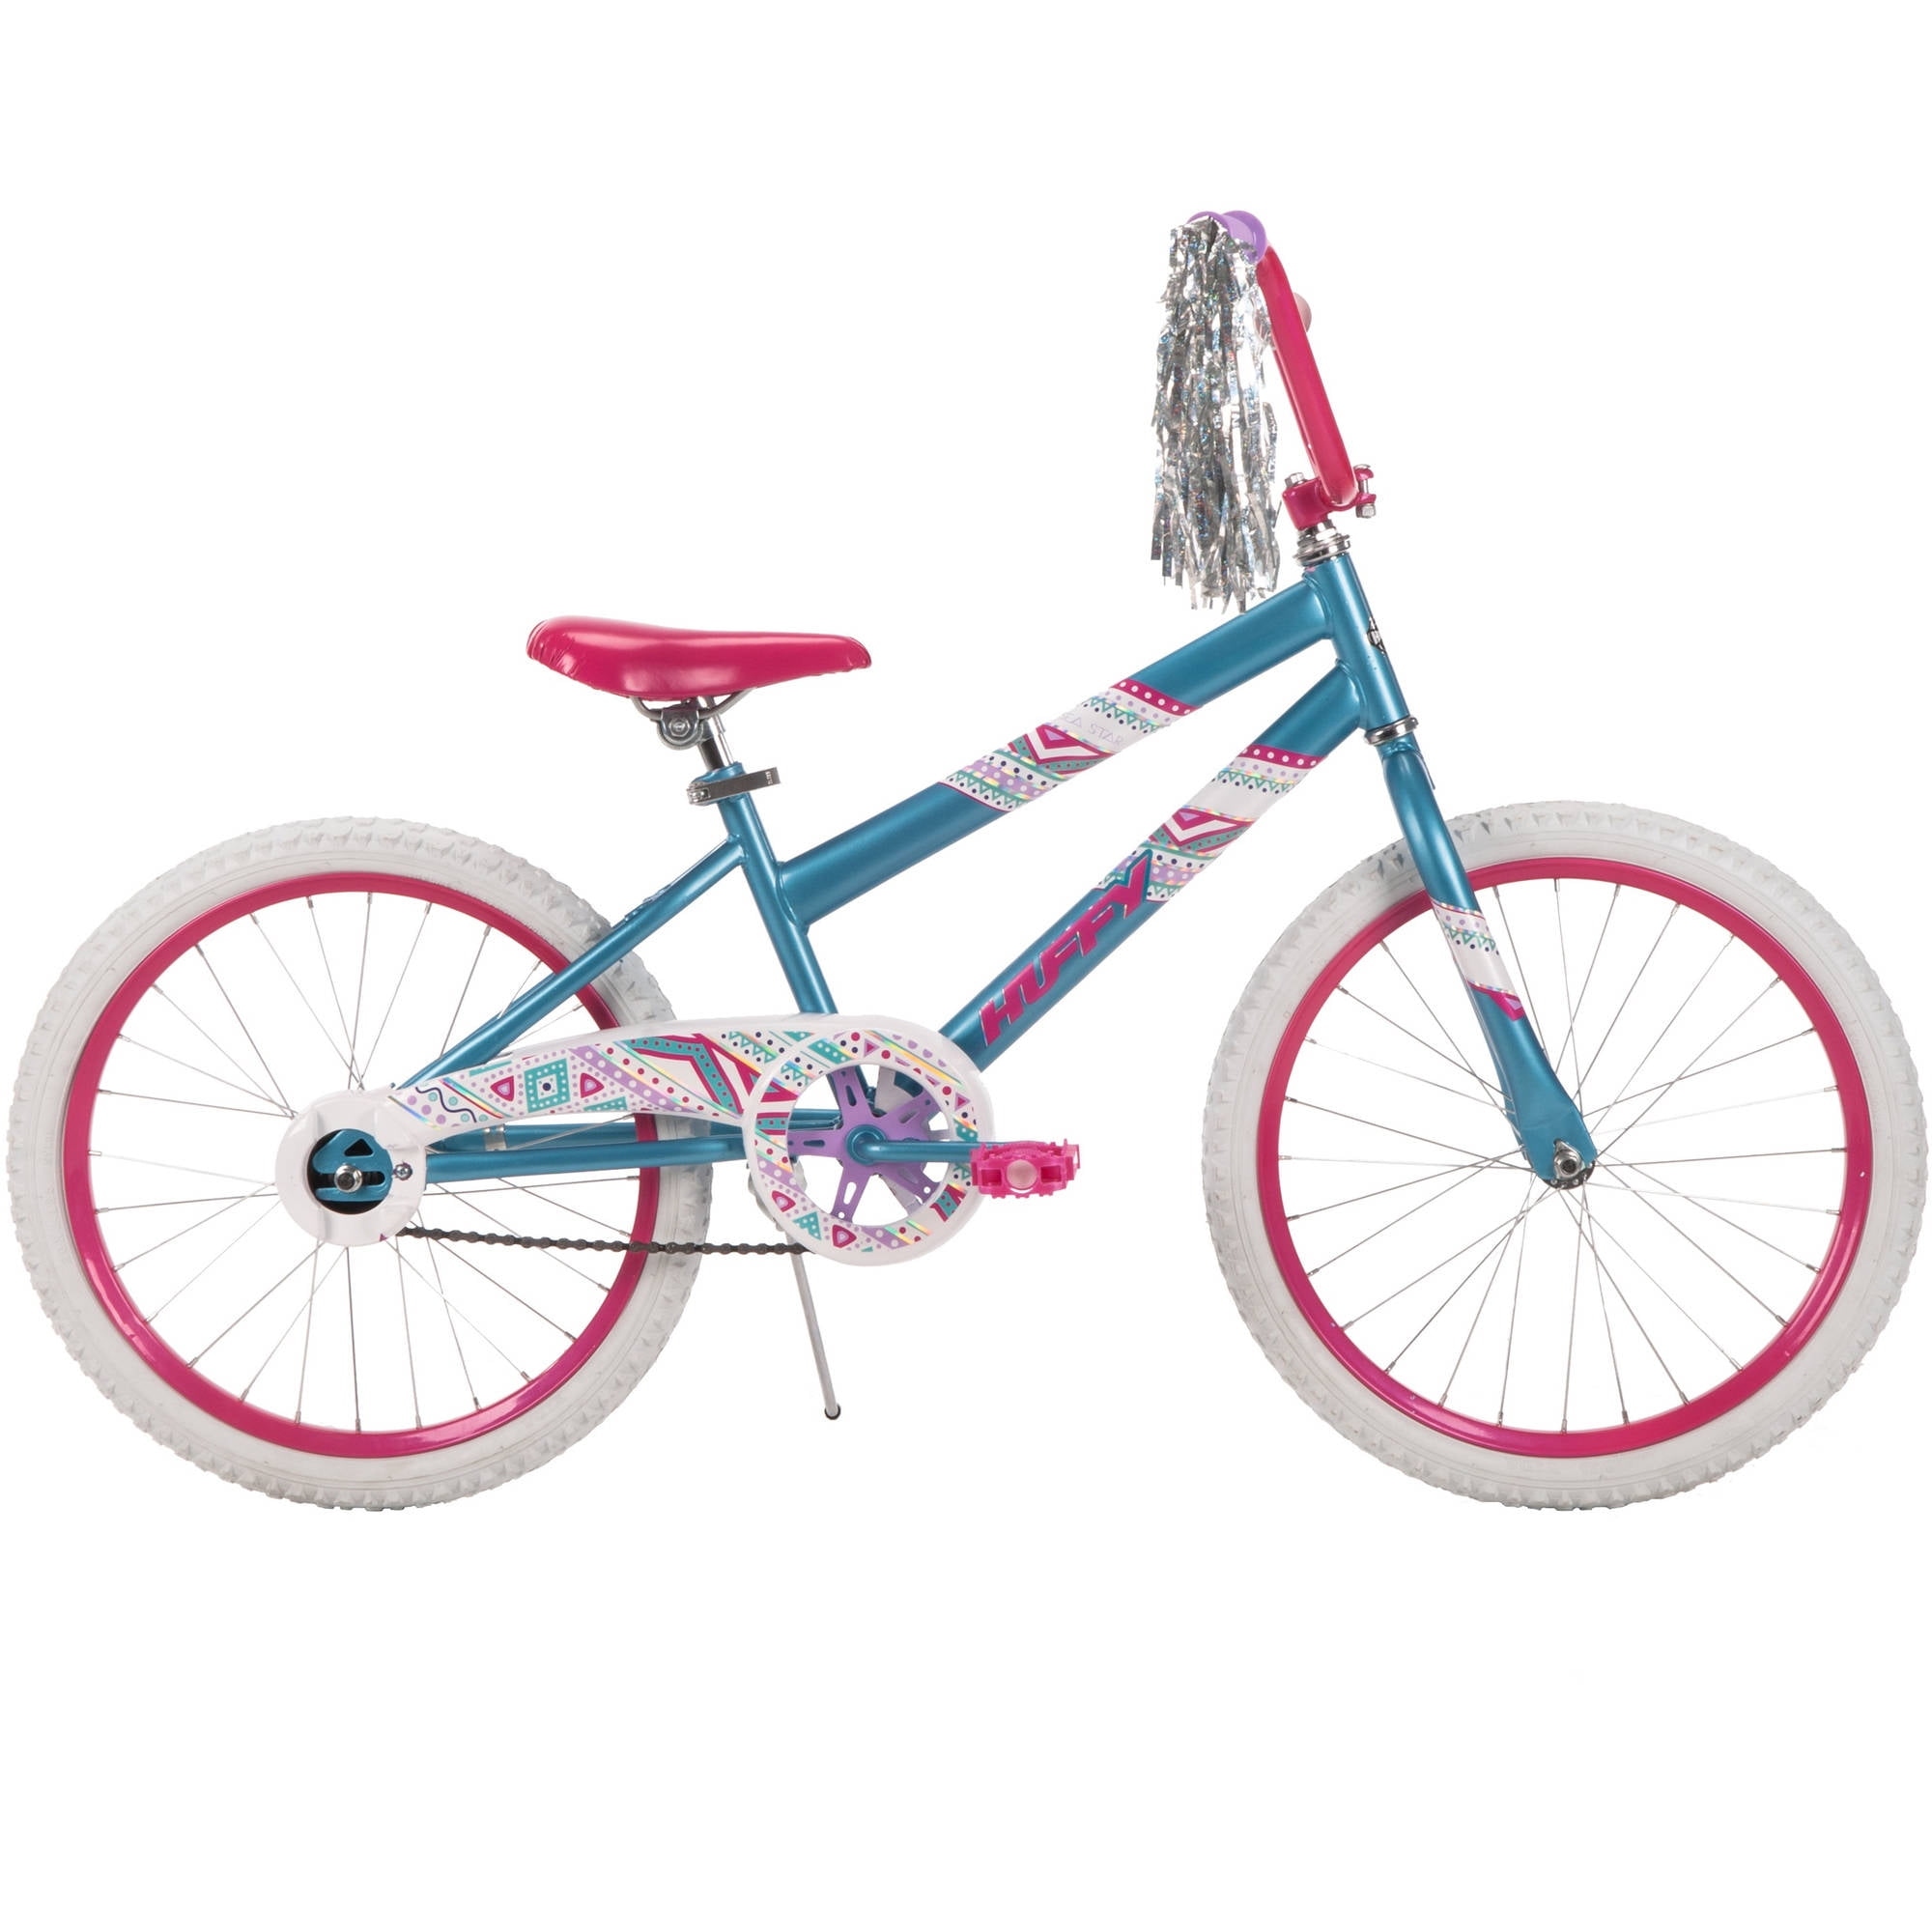 Huffy 20-Inch Sea Star Girls Bike Pink and White Blue 